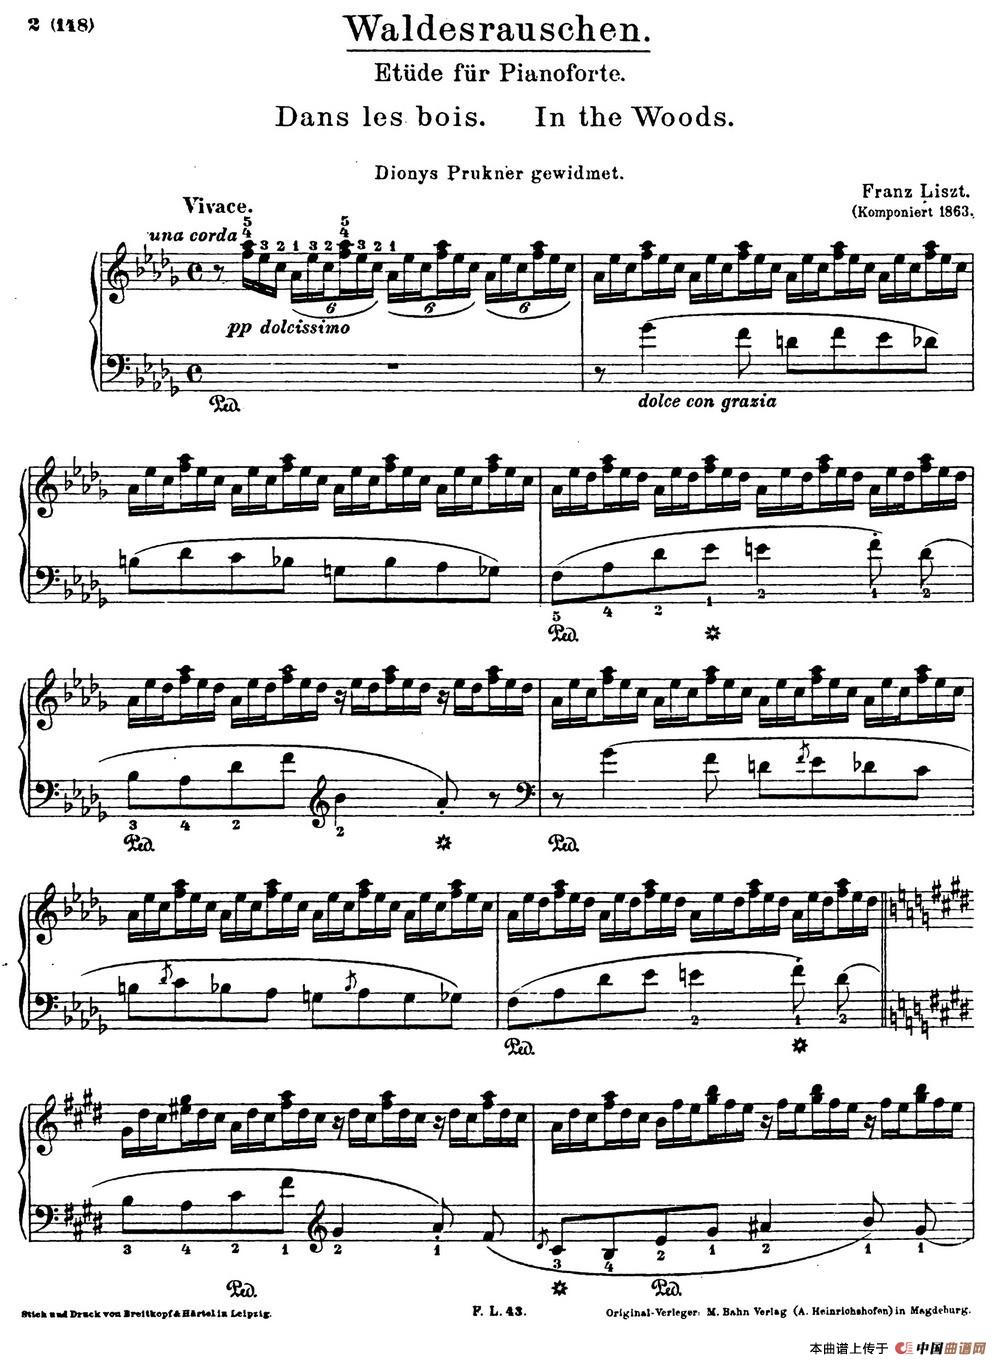 李斯特音乐会练习曲 S145（2 S145 侏儒舞 Gnomenreigen）(1)_Etudes de Concert s145 Liszt_页面_09~1.jpg